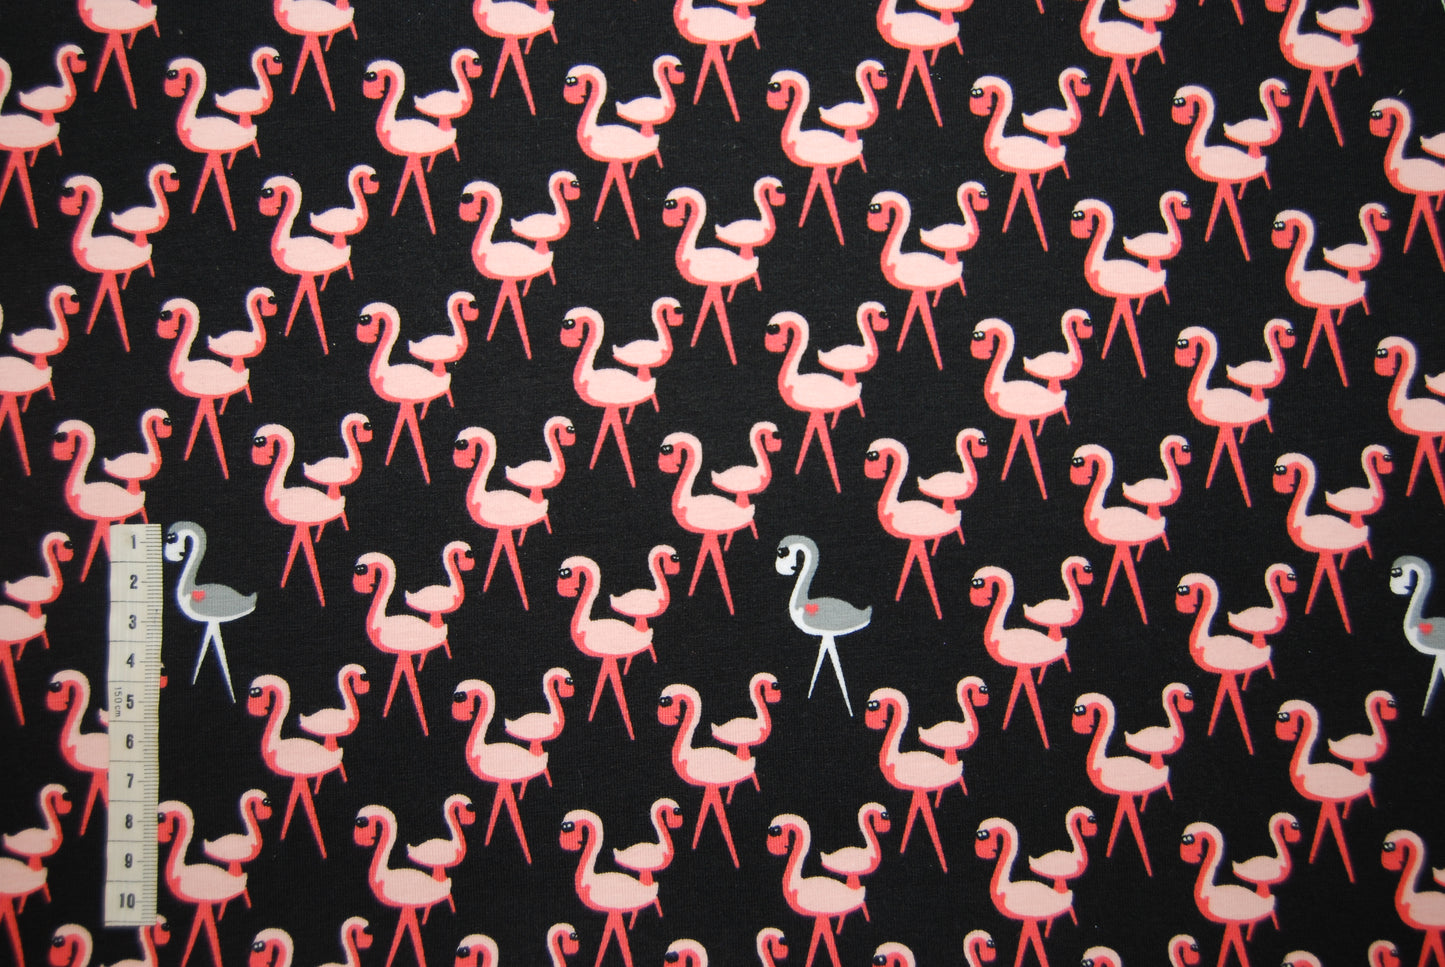 Flamingokalas trikå